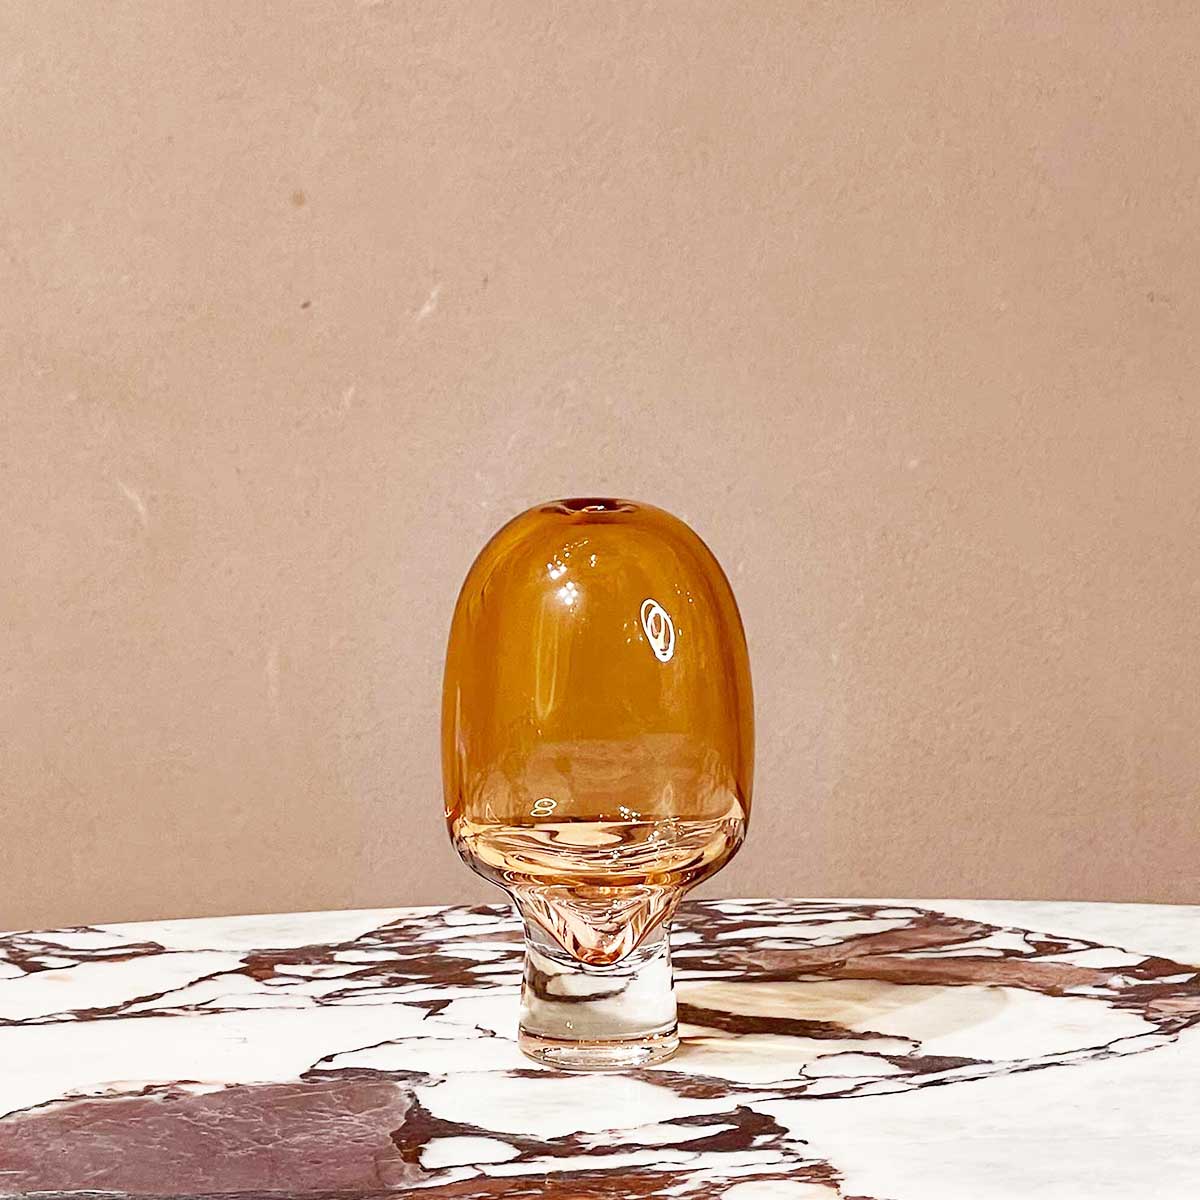 Yumemiru Glass Vessel Small - Amber